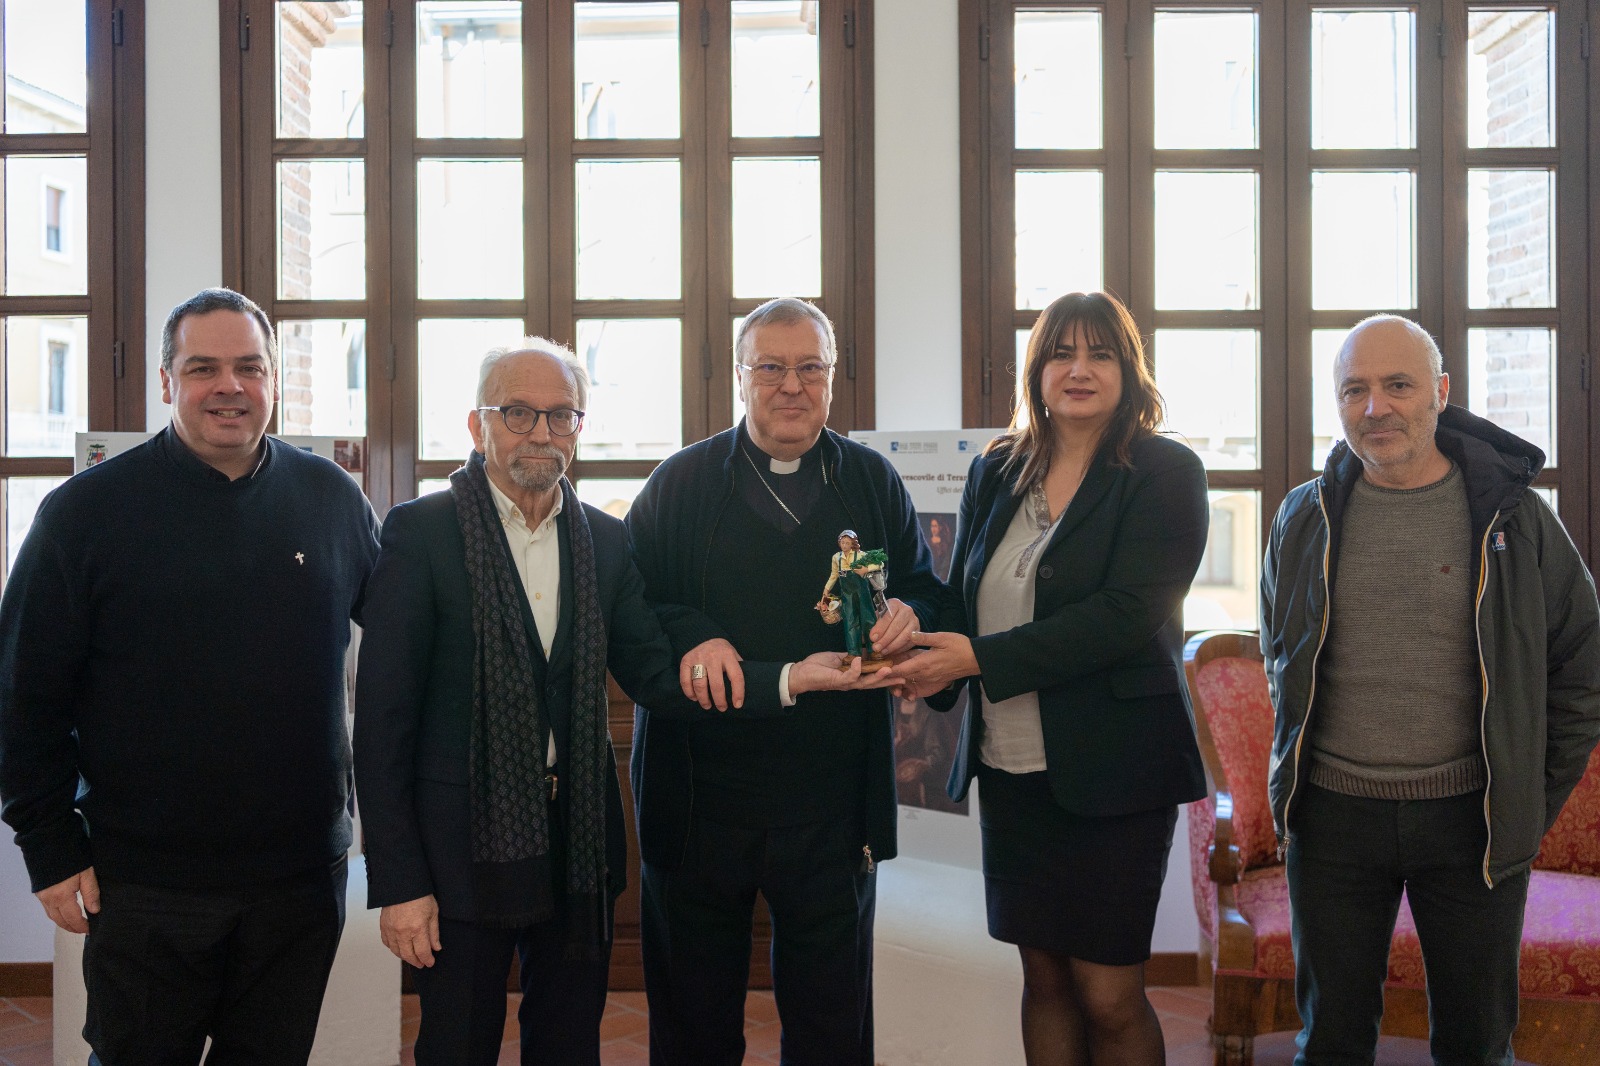 Presepe 2021: consegnata la statuina dell'artigiano imprenditore ai vescovi  di Avezzano e Sulmona – Terre Marsicane